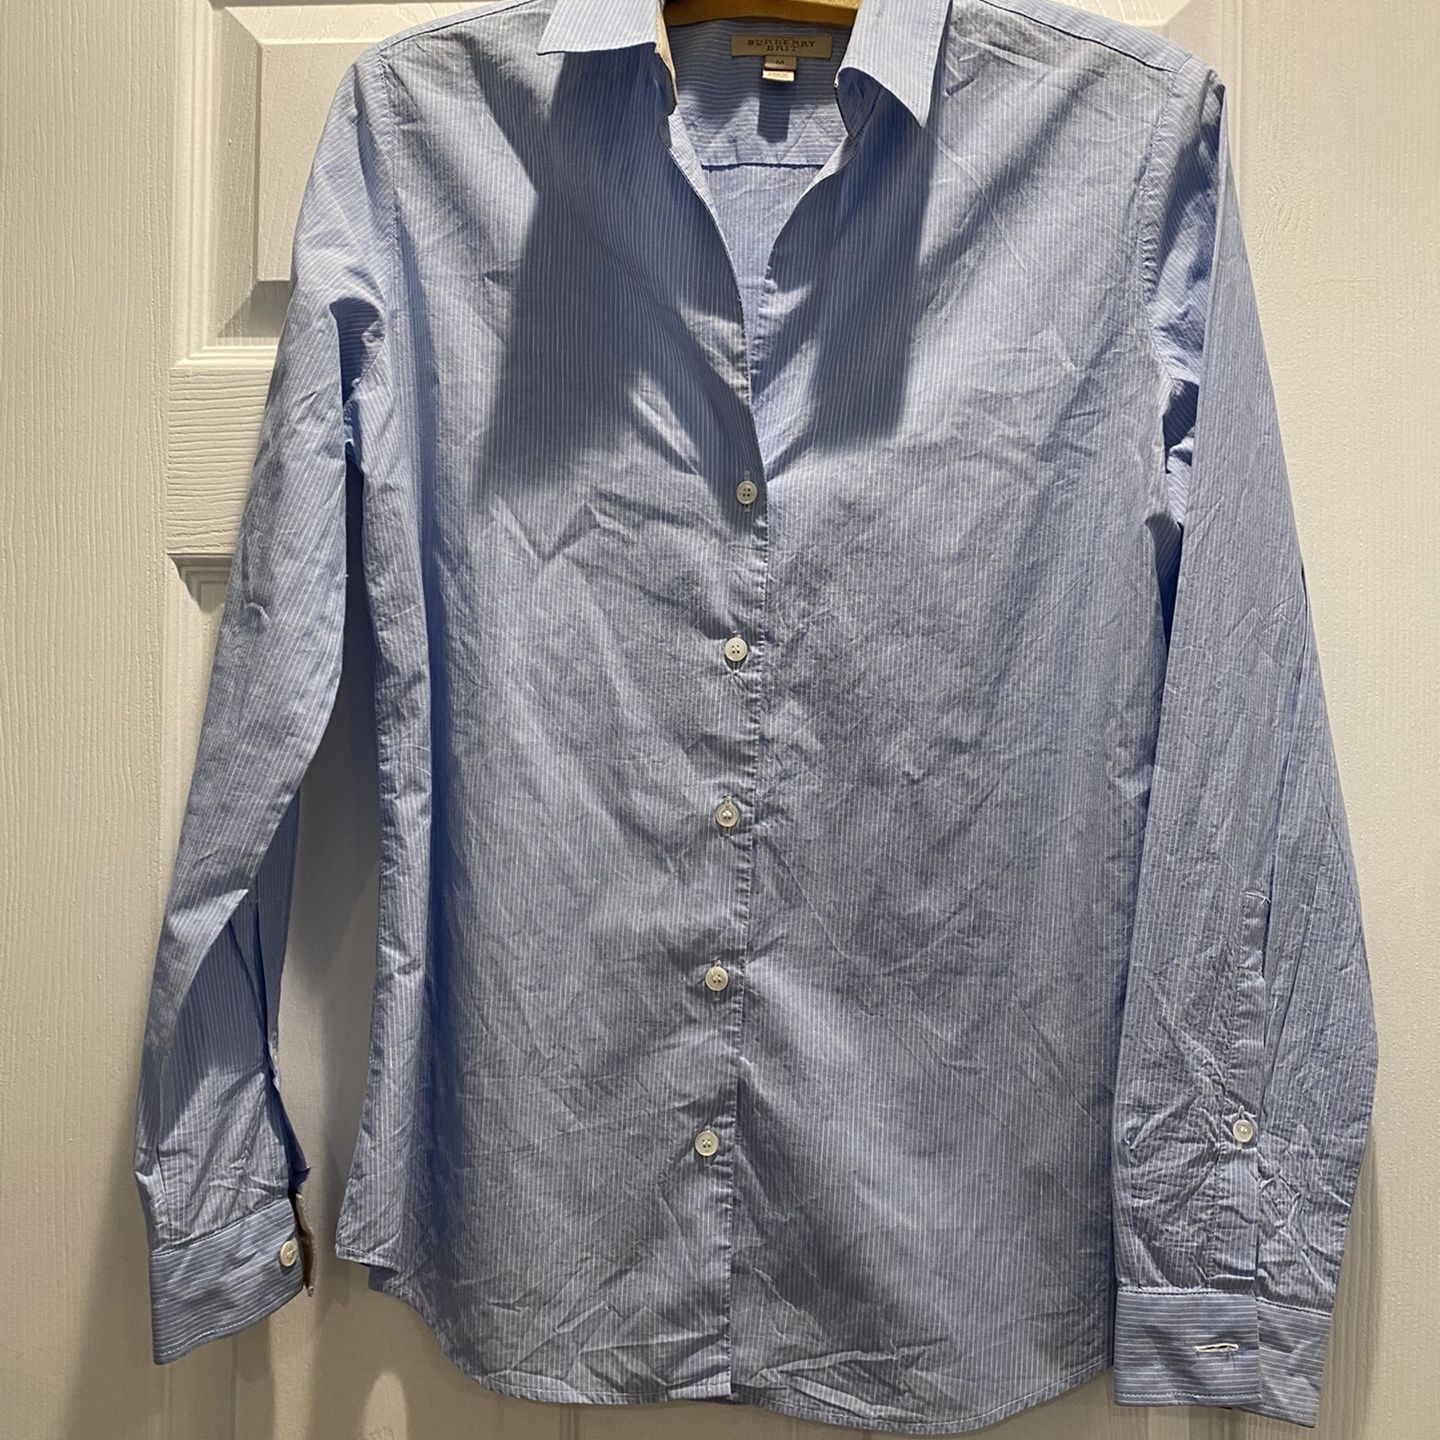 Burberry Women’s Button Up Shirt - Size Medium